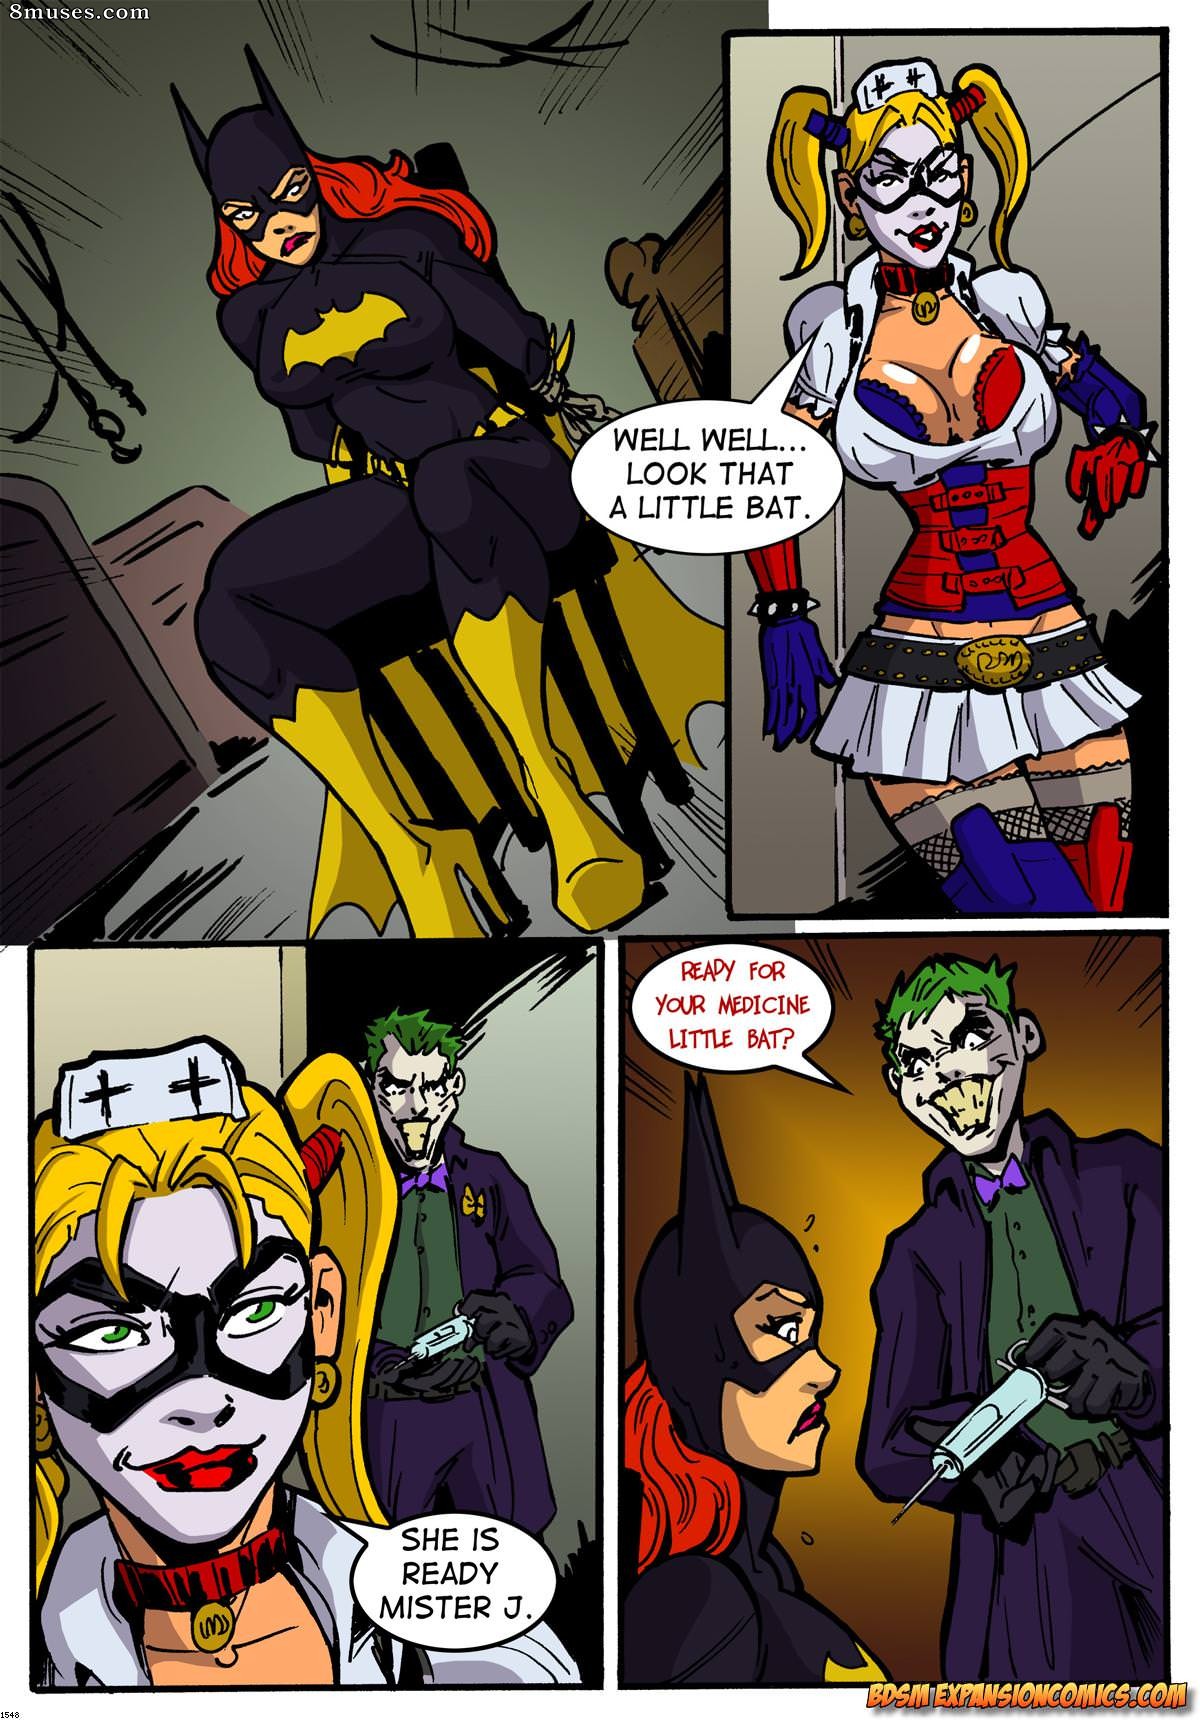 Batgirl & Joker Issue 1 - 8muses Comics - Sex Comics and Porn Cartoons